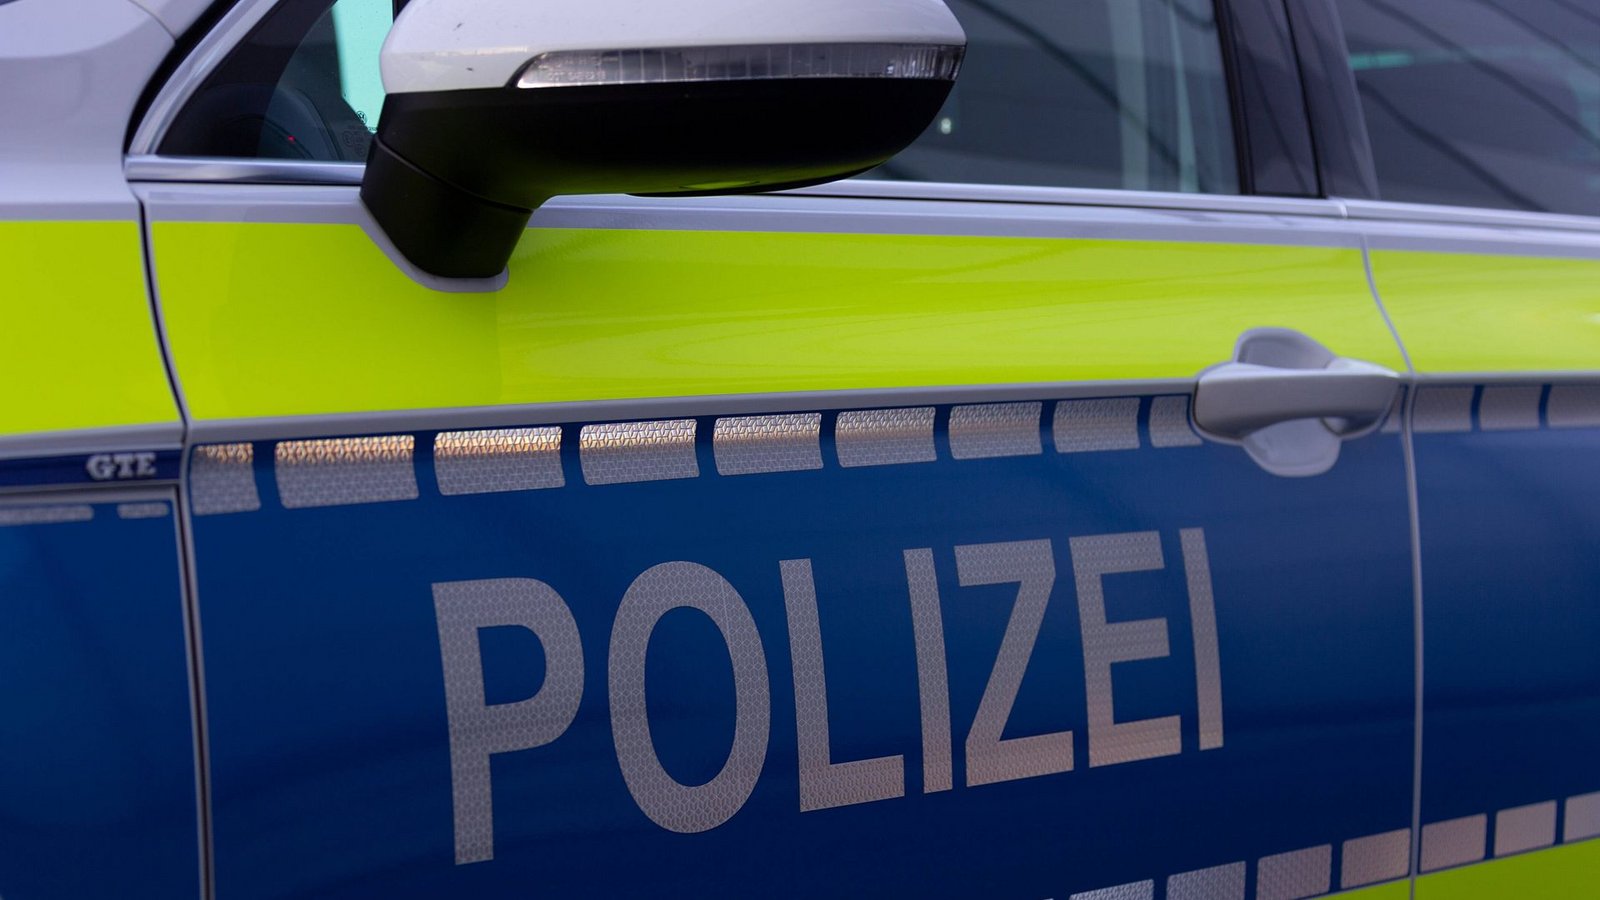 Der Jugendliche  meldete sich nach der Bahnfahrt bei der Bundespolizei in Konstanz. (Symbolfoto)Foto: imago images/Fotostand/Fotostand / Gelhot via www.imago-images.de